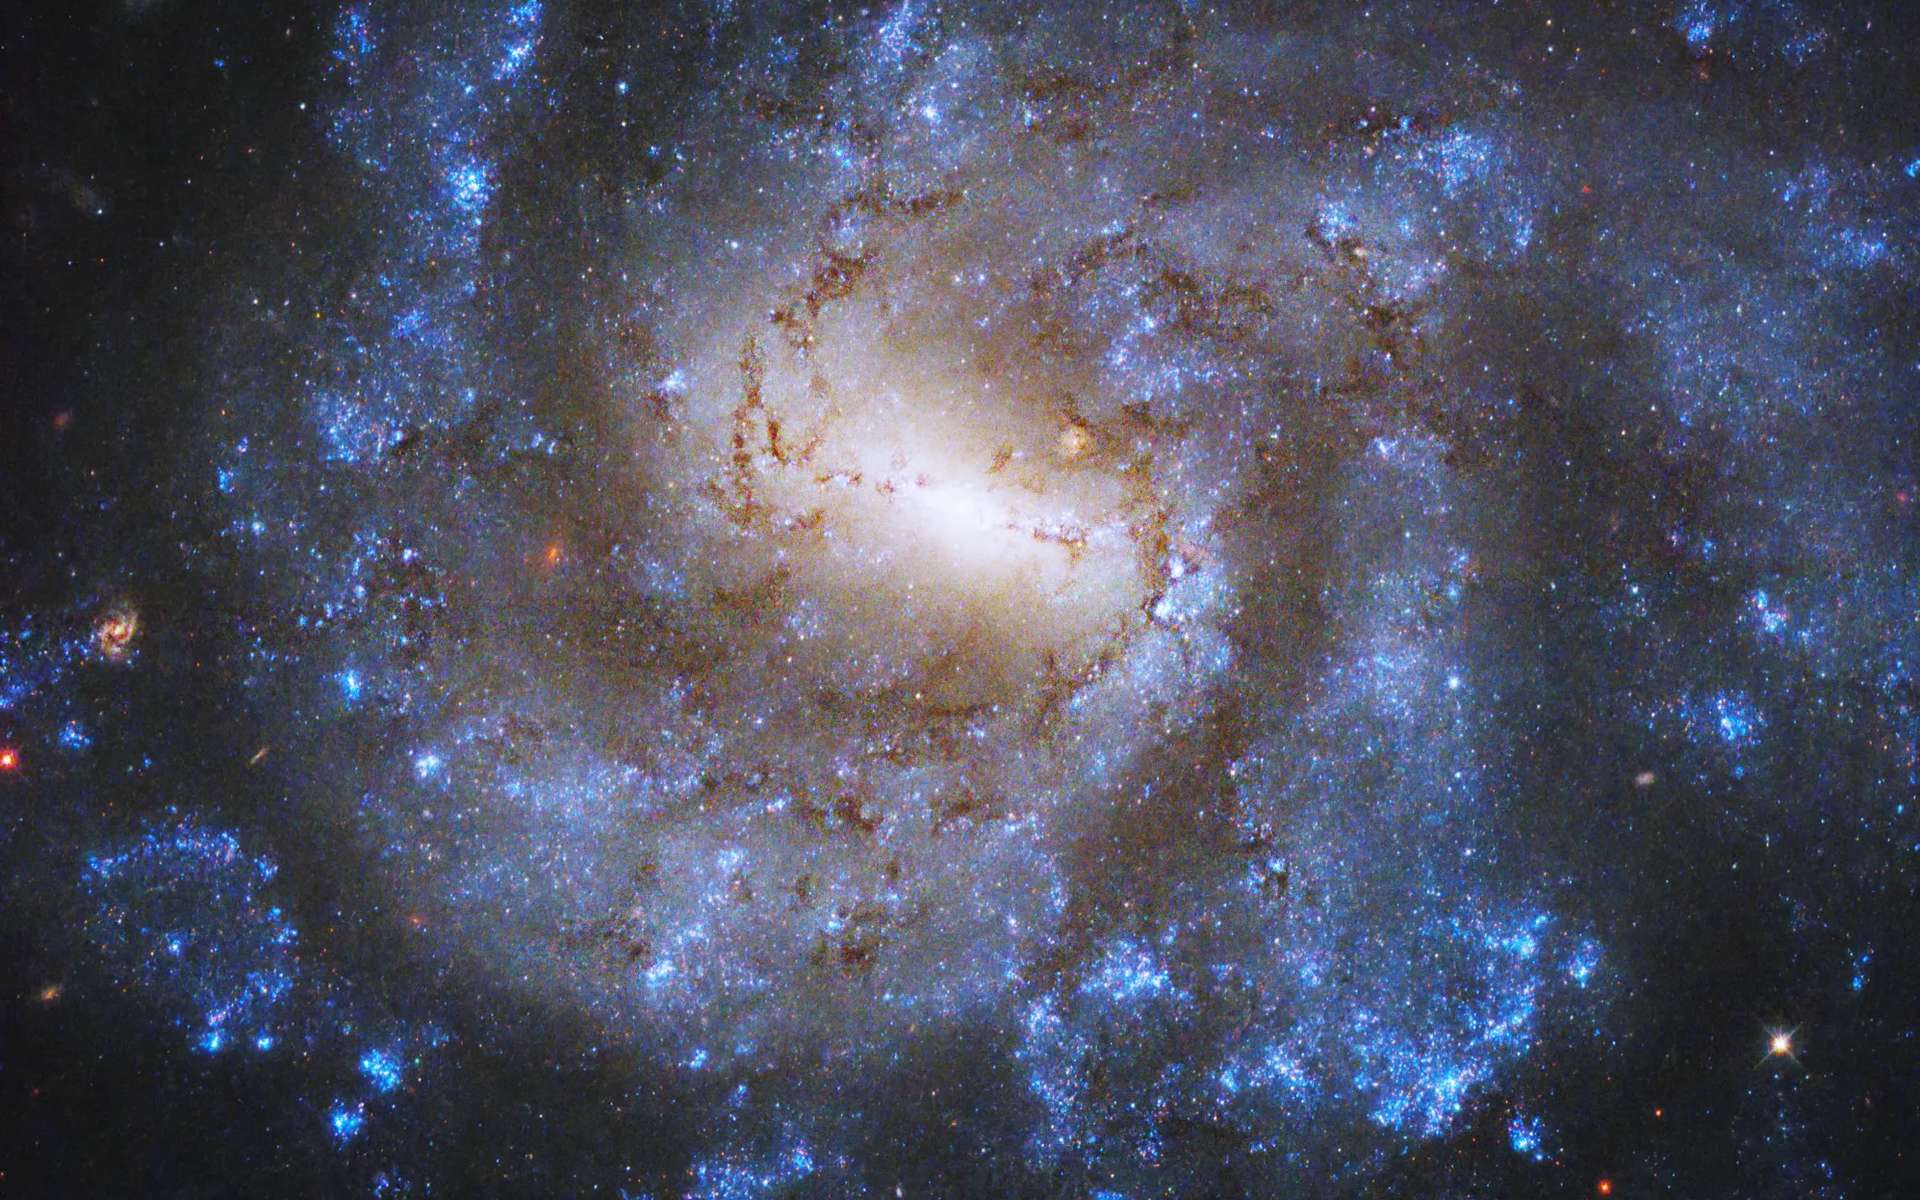 Les télescopes James-Webb et Hubble nous émerveillent avec cette galaxie spirale barrée